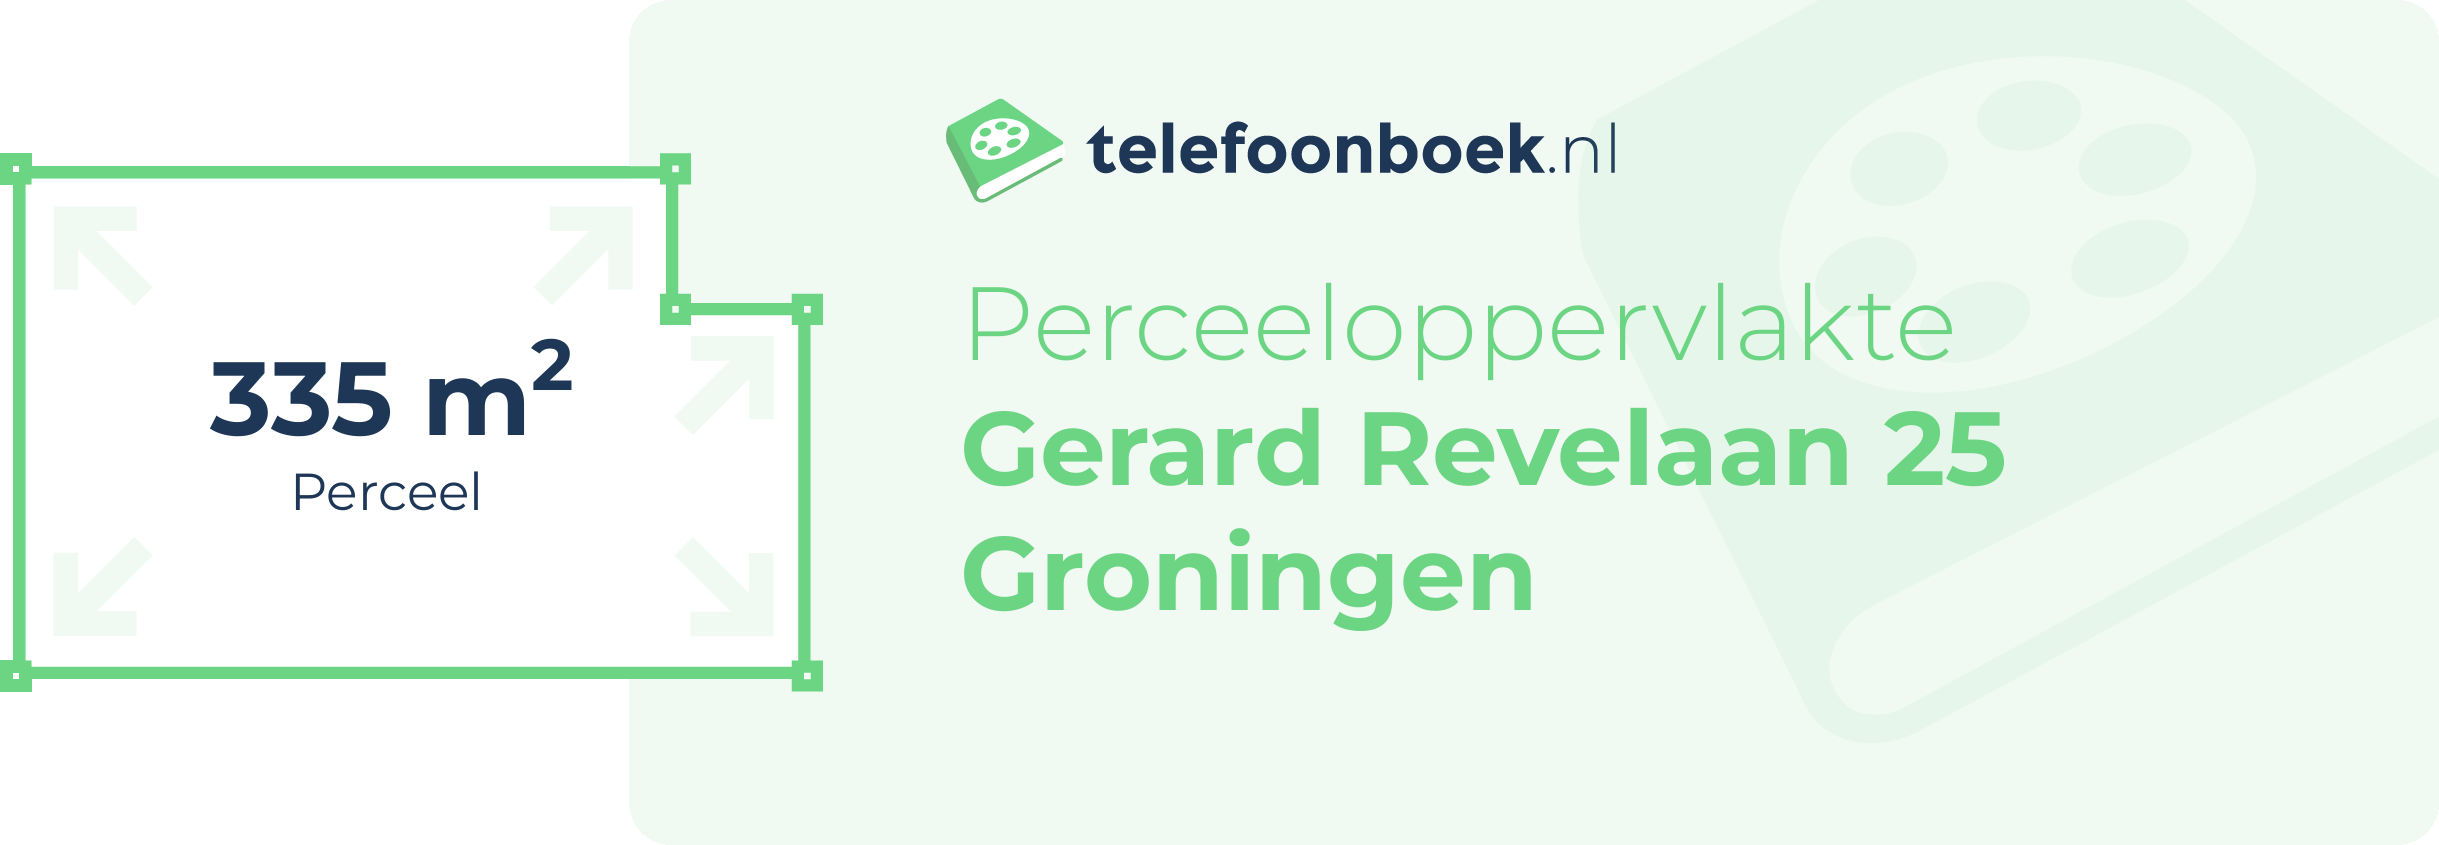 Perceeloppervlakte Gerard Revelaan 25 Groningen